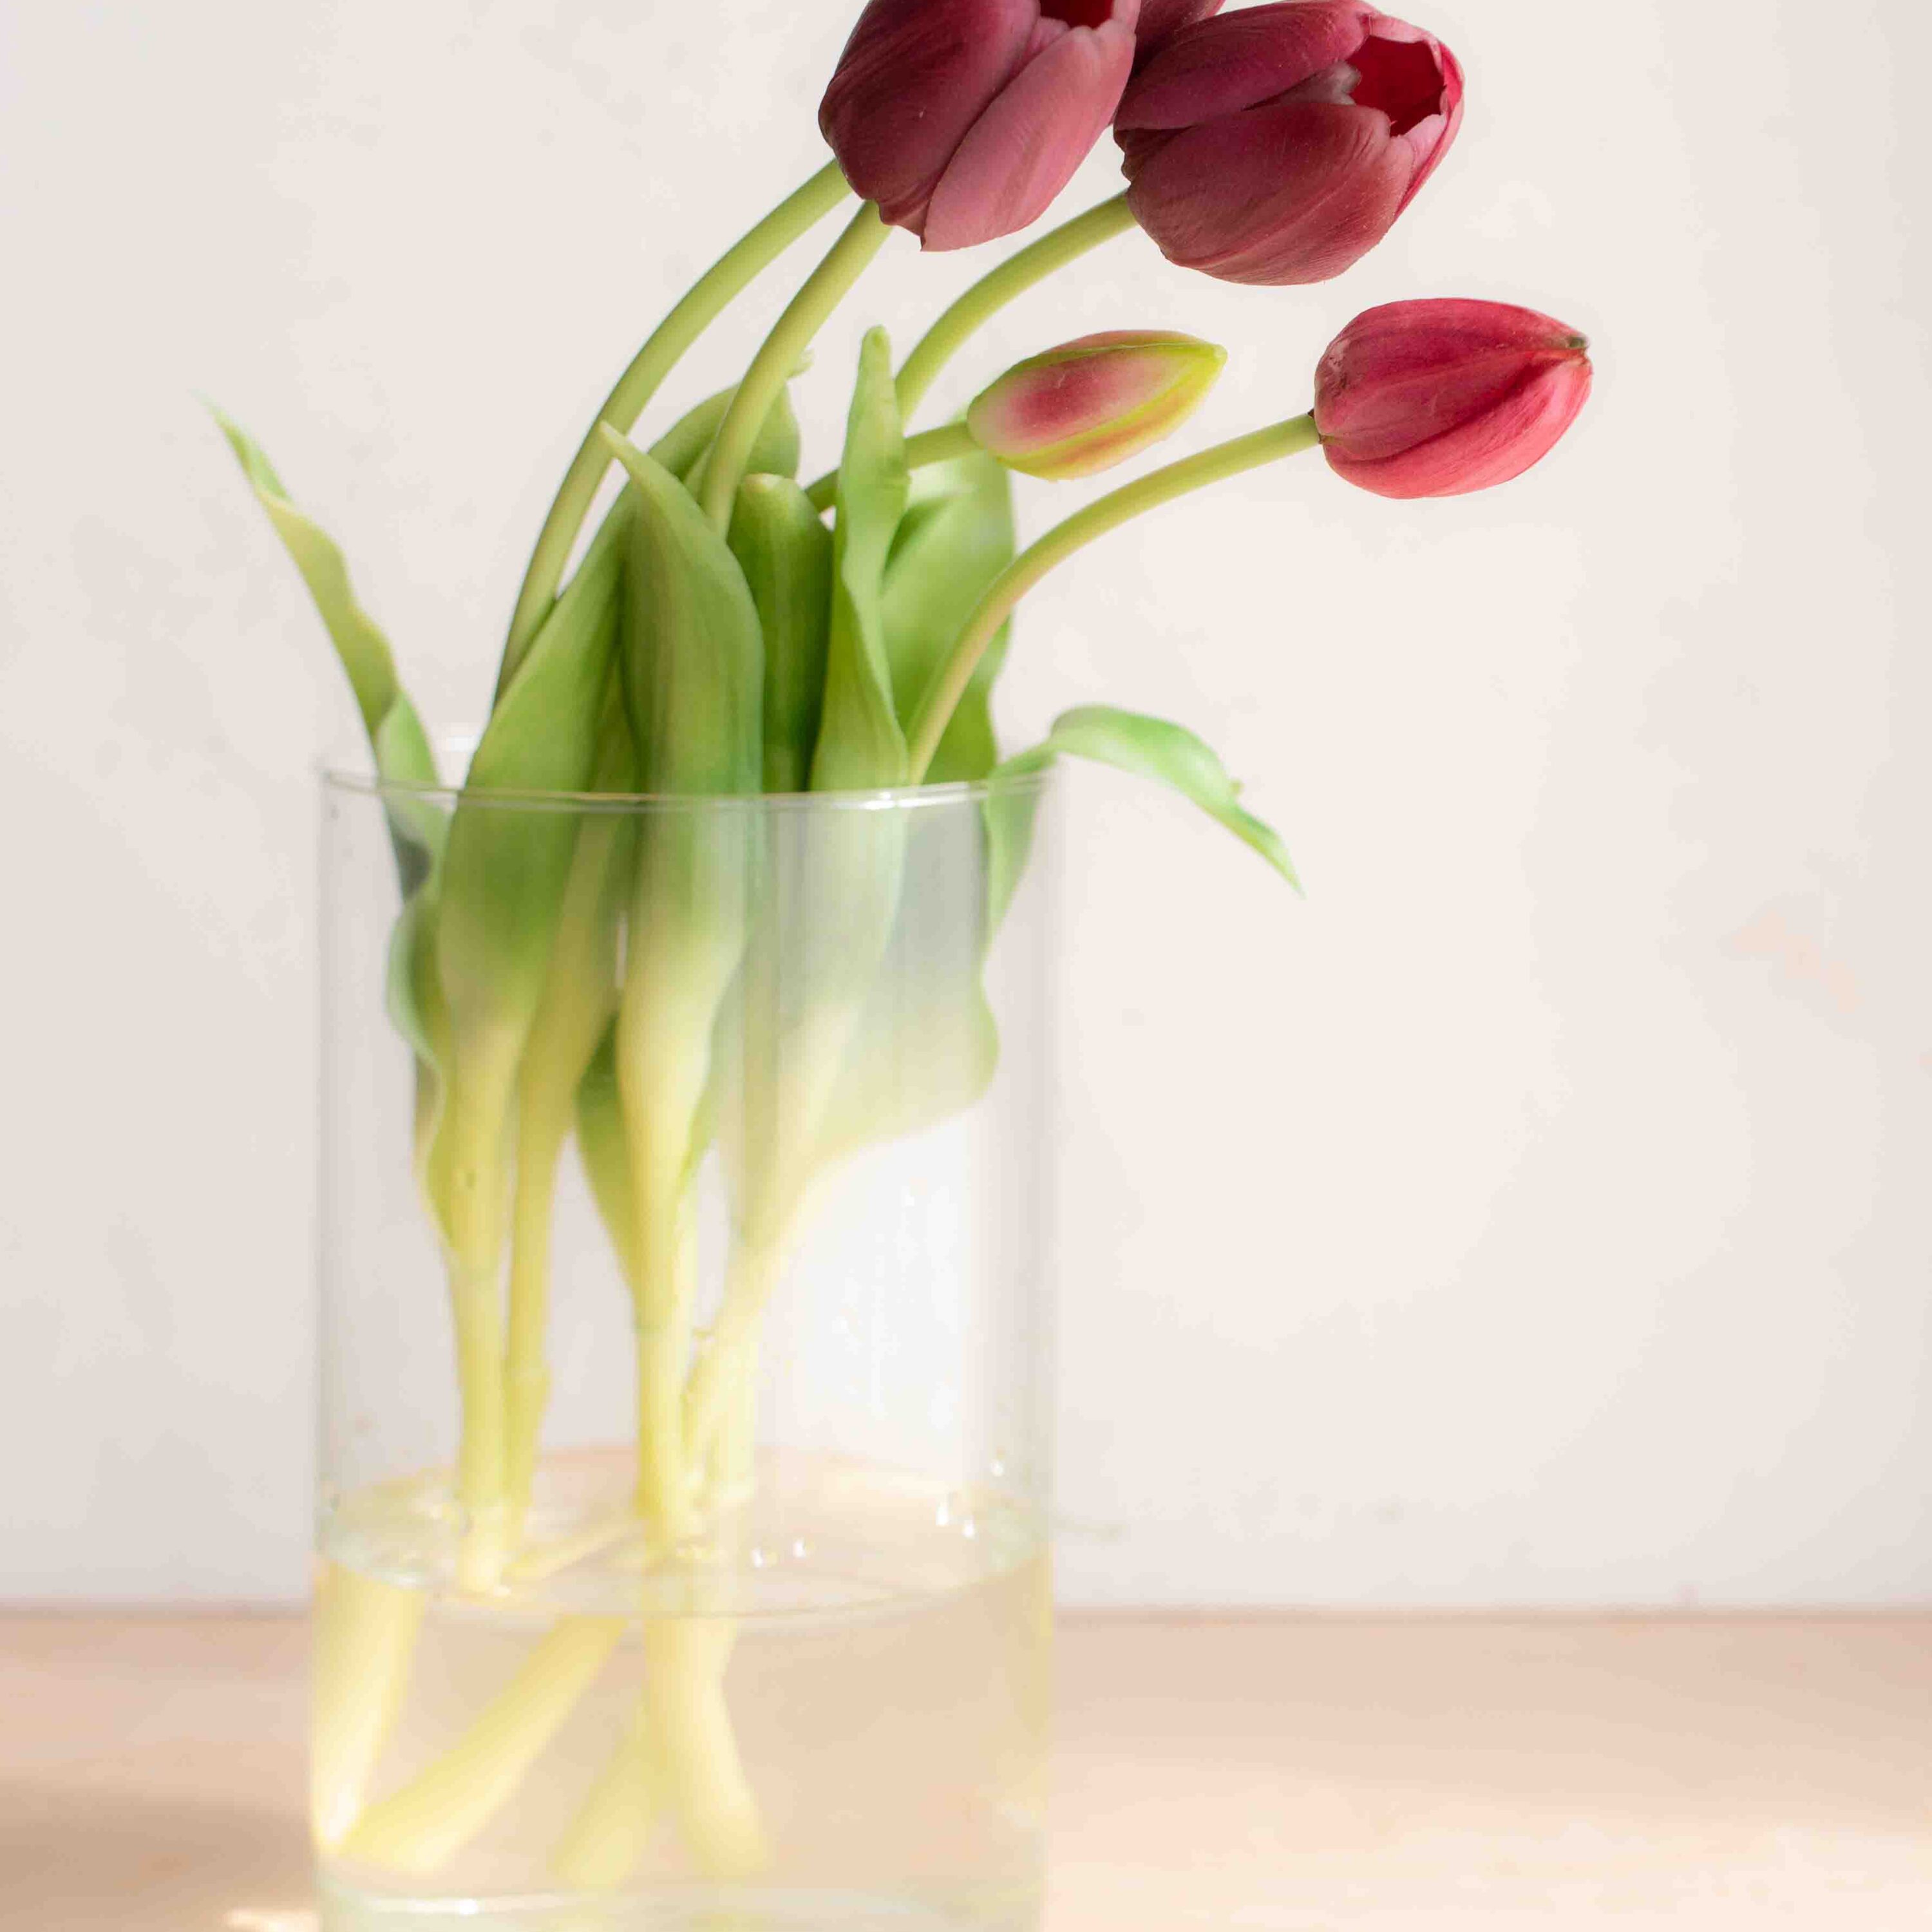 bellissimi tulipani real touch, estremamente realistici colore amaranto